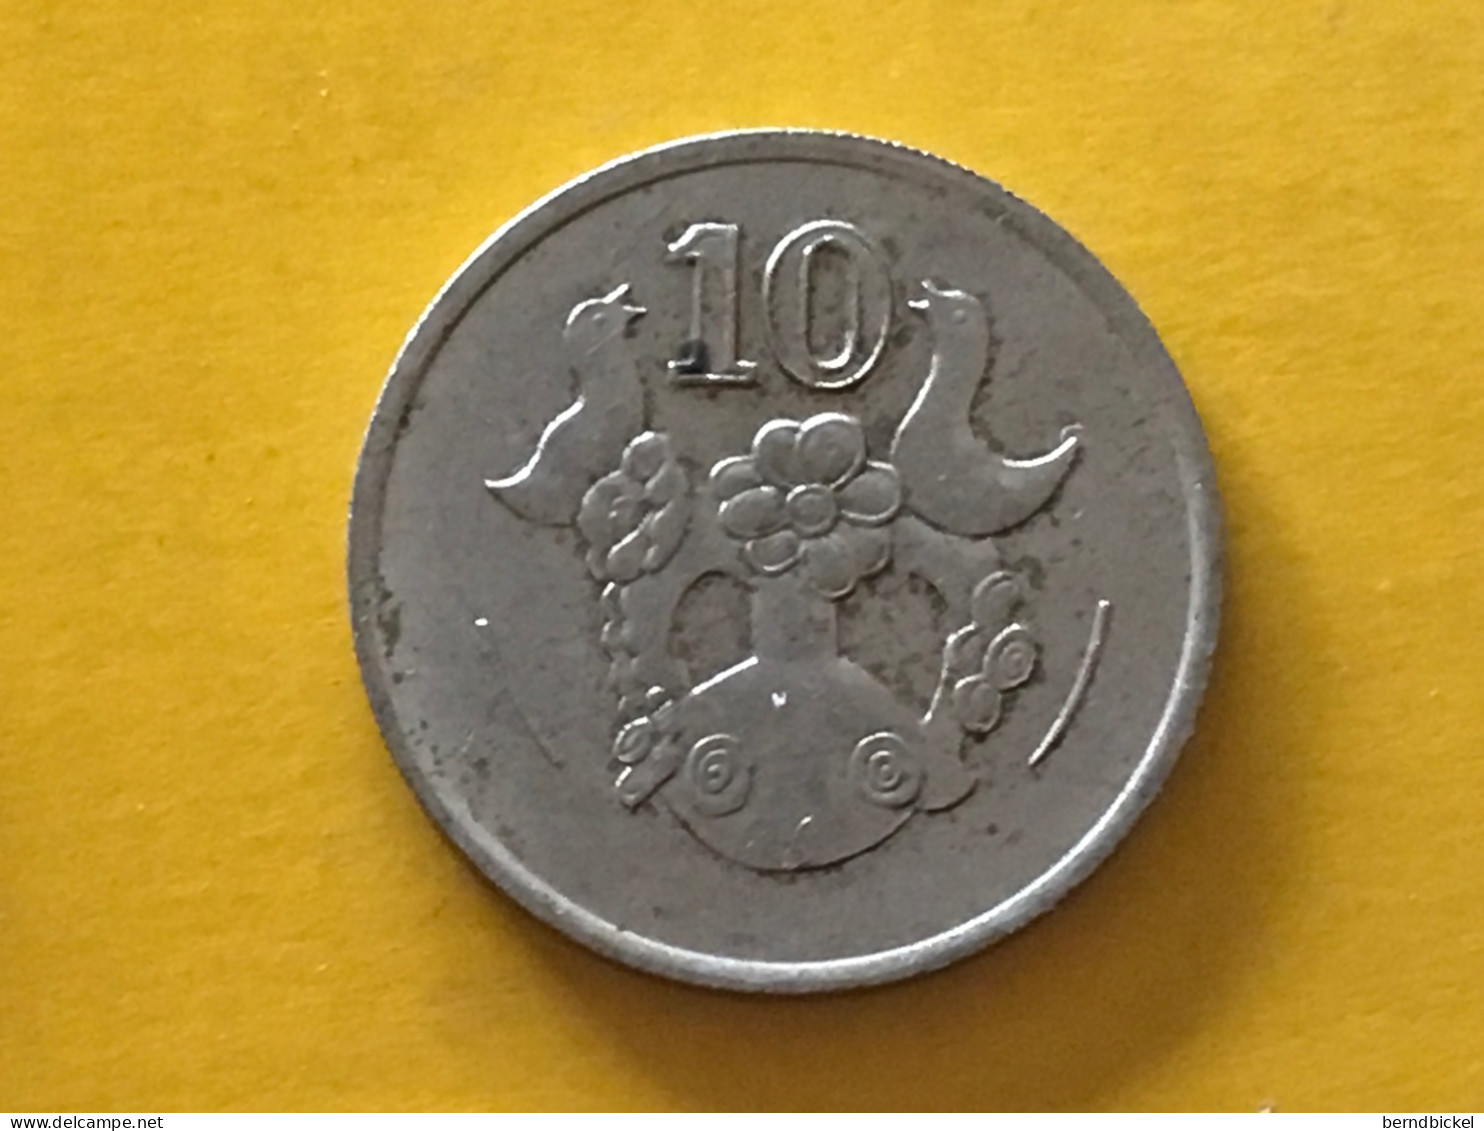 Münze Münzen Umlaufmünze Zypern 10 Cent 1993 - Chipre